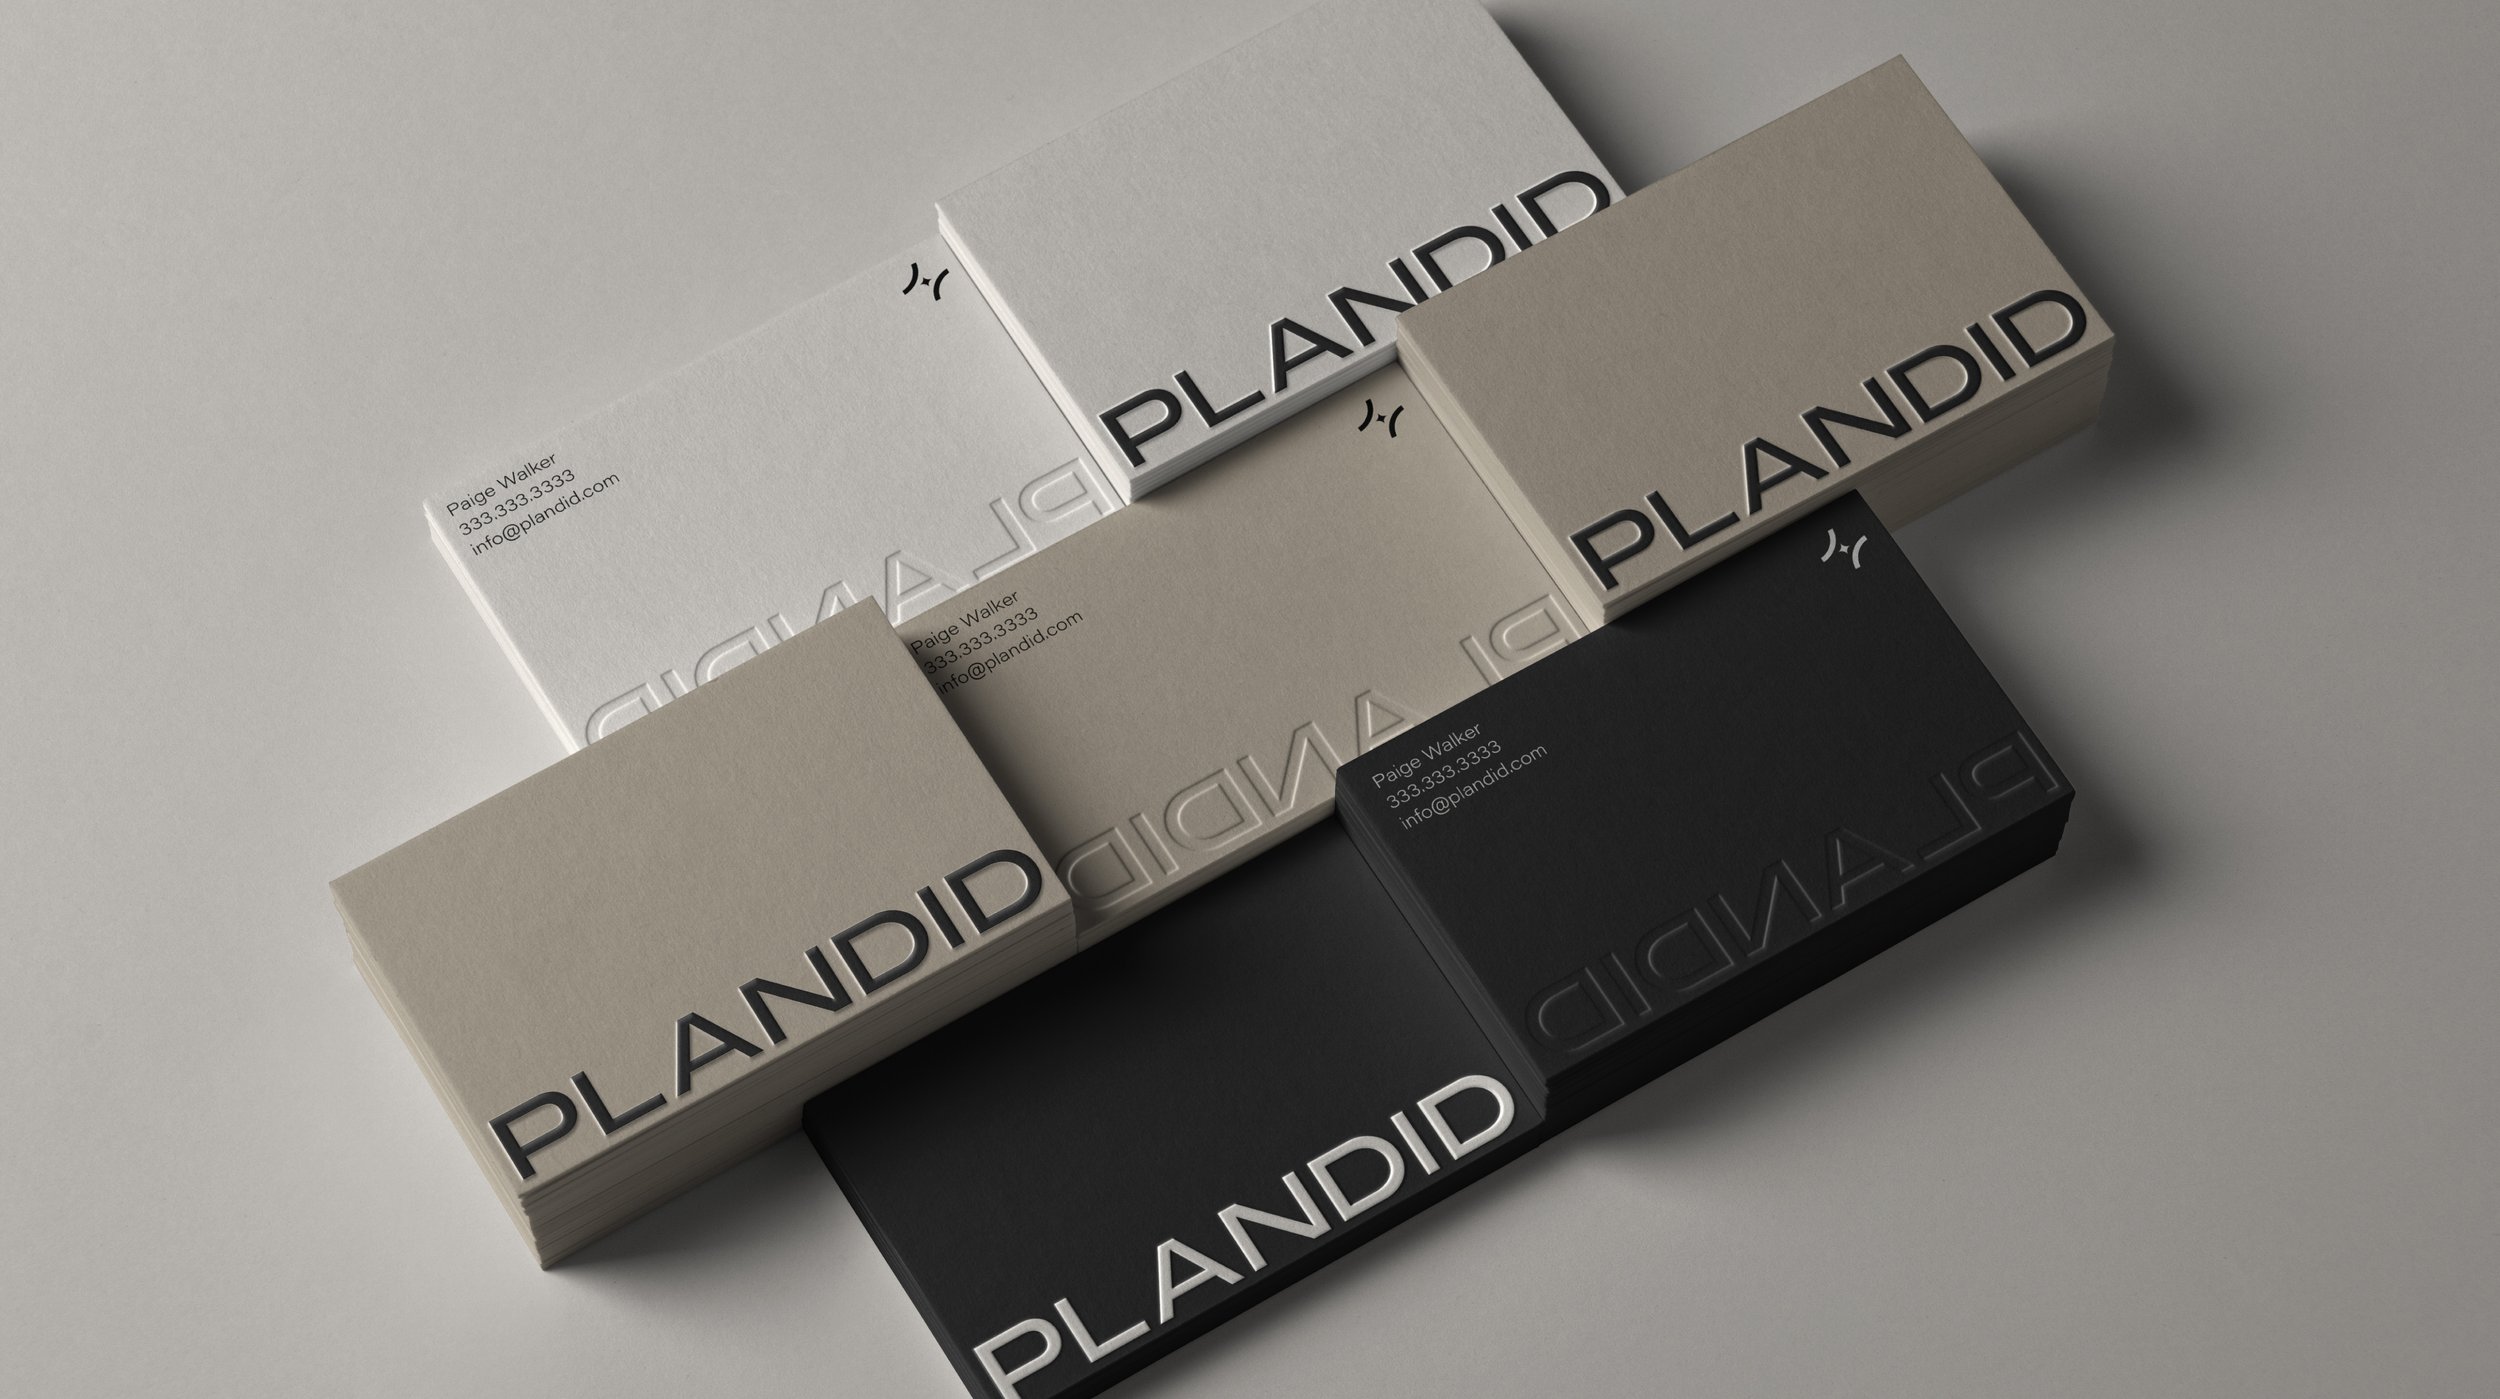 Plandid_Mockups-32.jpg